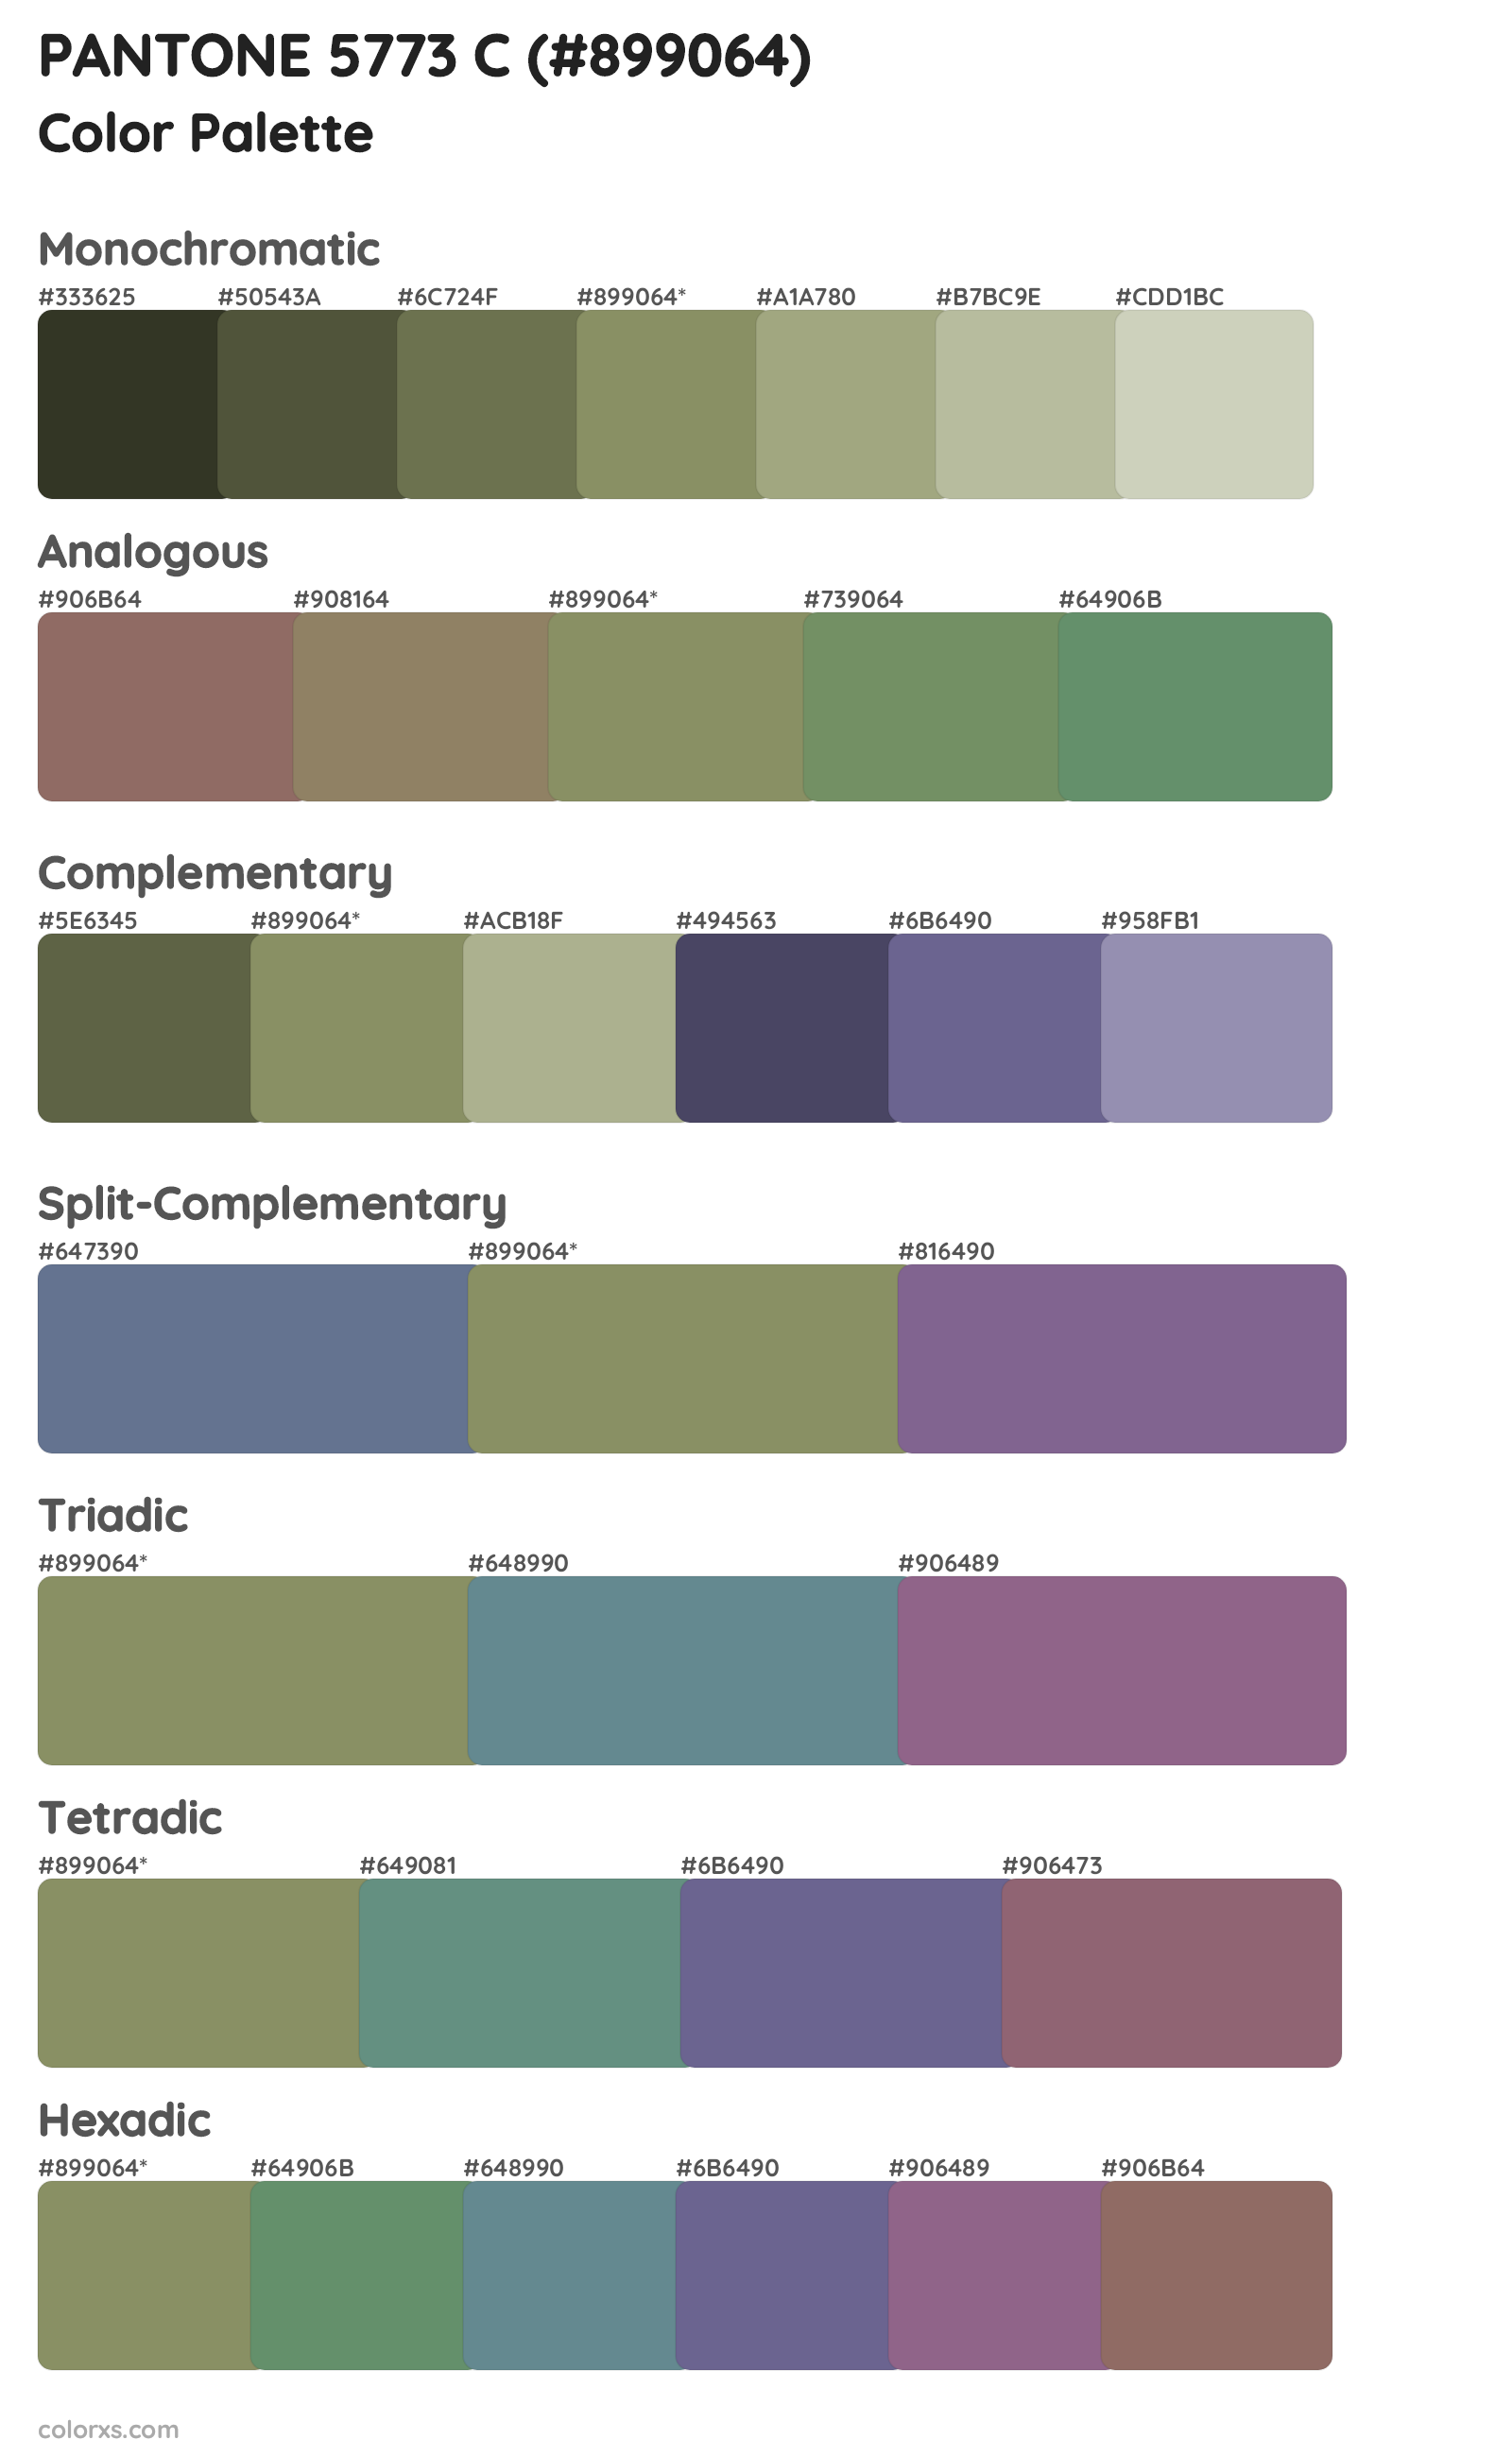 PANTONE 5773 C Color Scheme Palettes